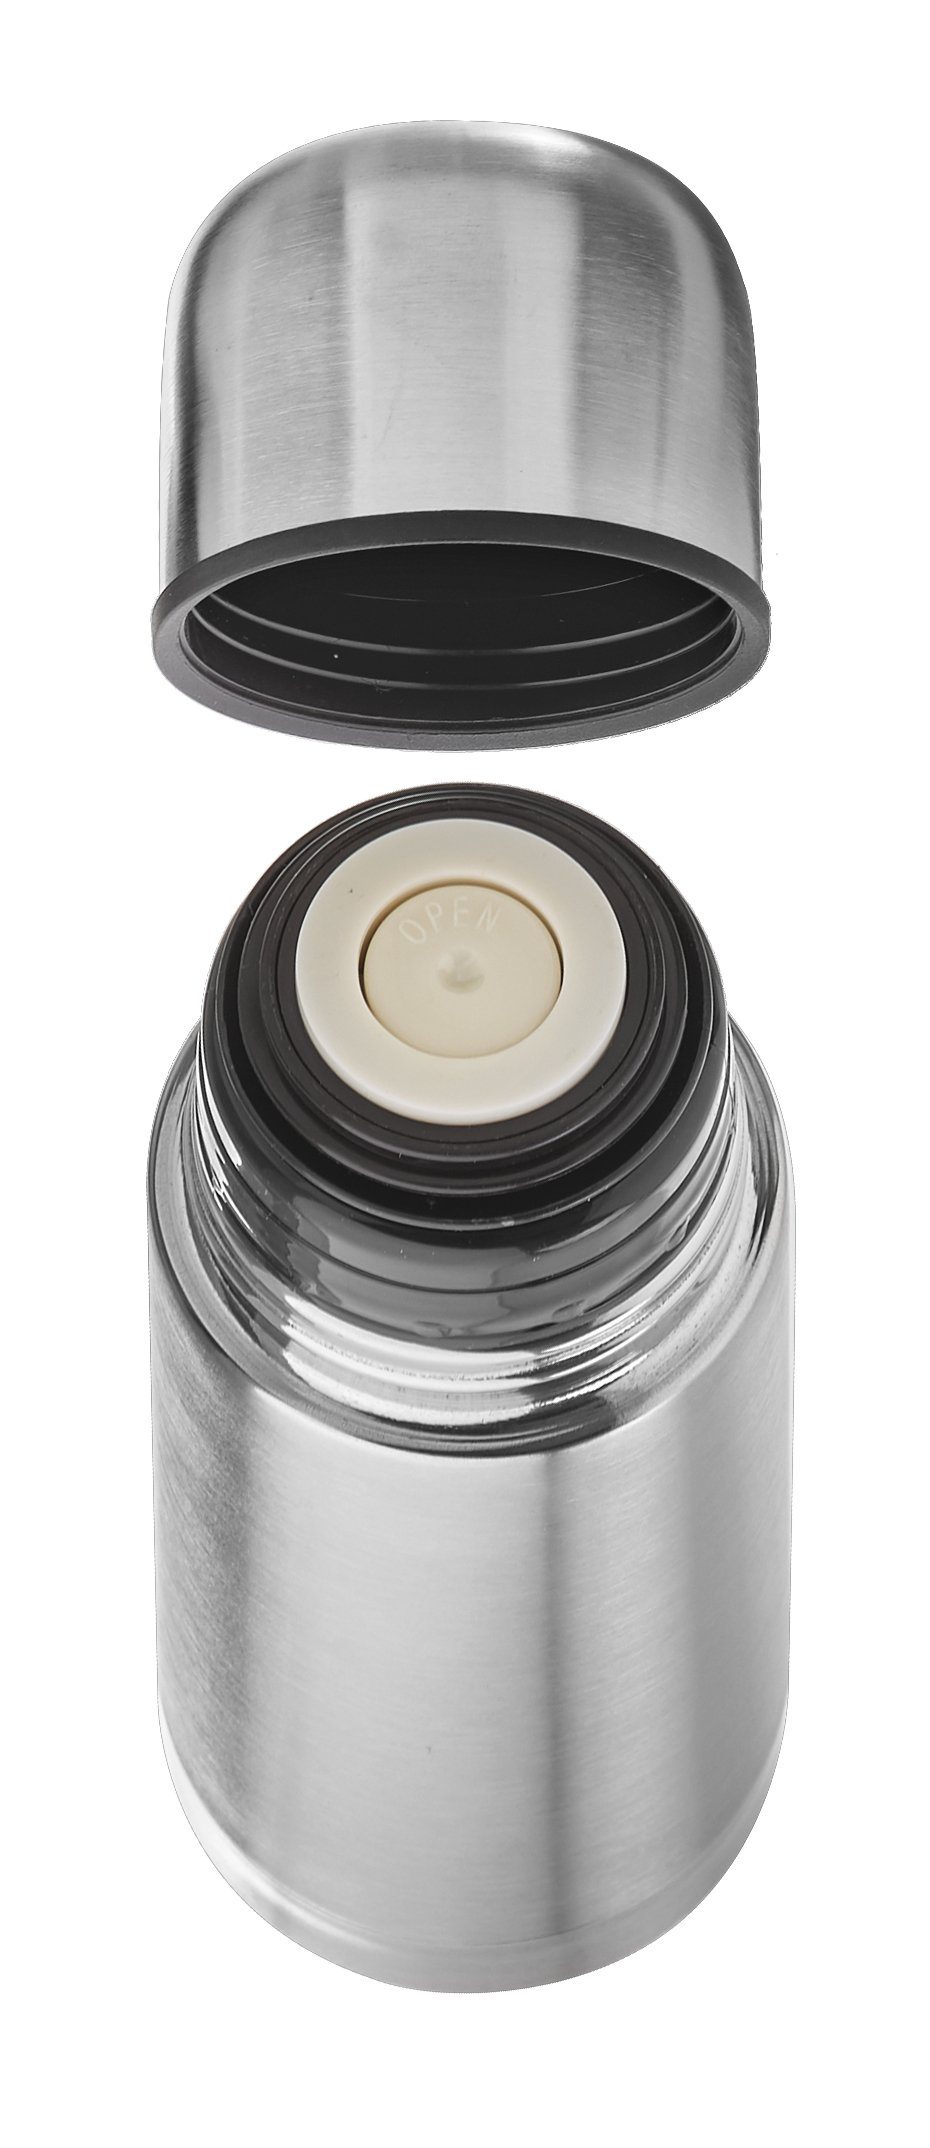 Goldhofer Thermoflasche Edelstahl: Thermoskanne-Flasche kalte und ein Technik, heiße Getränke, Edestahl, für Vaccum Verschluss Knopf